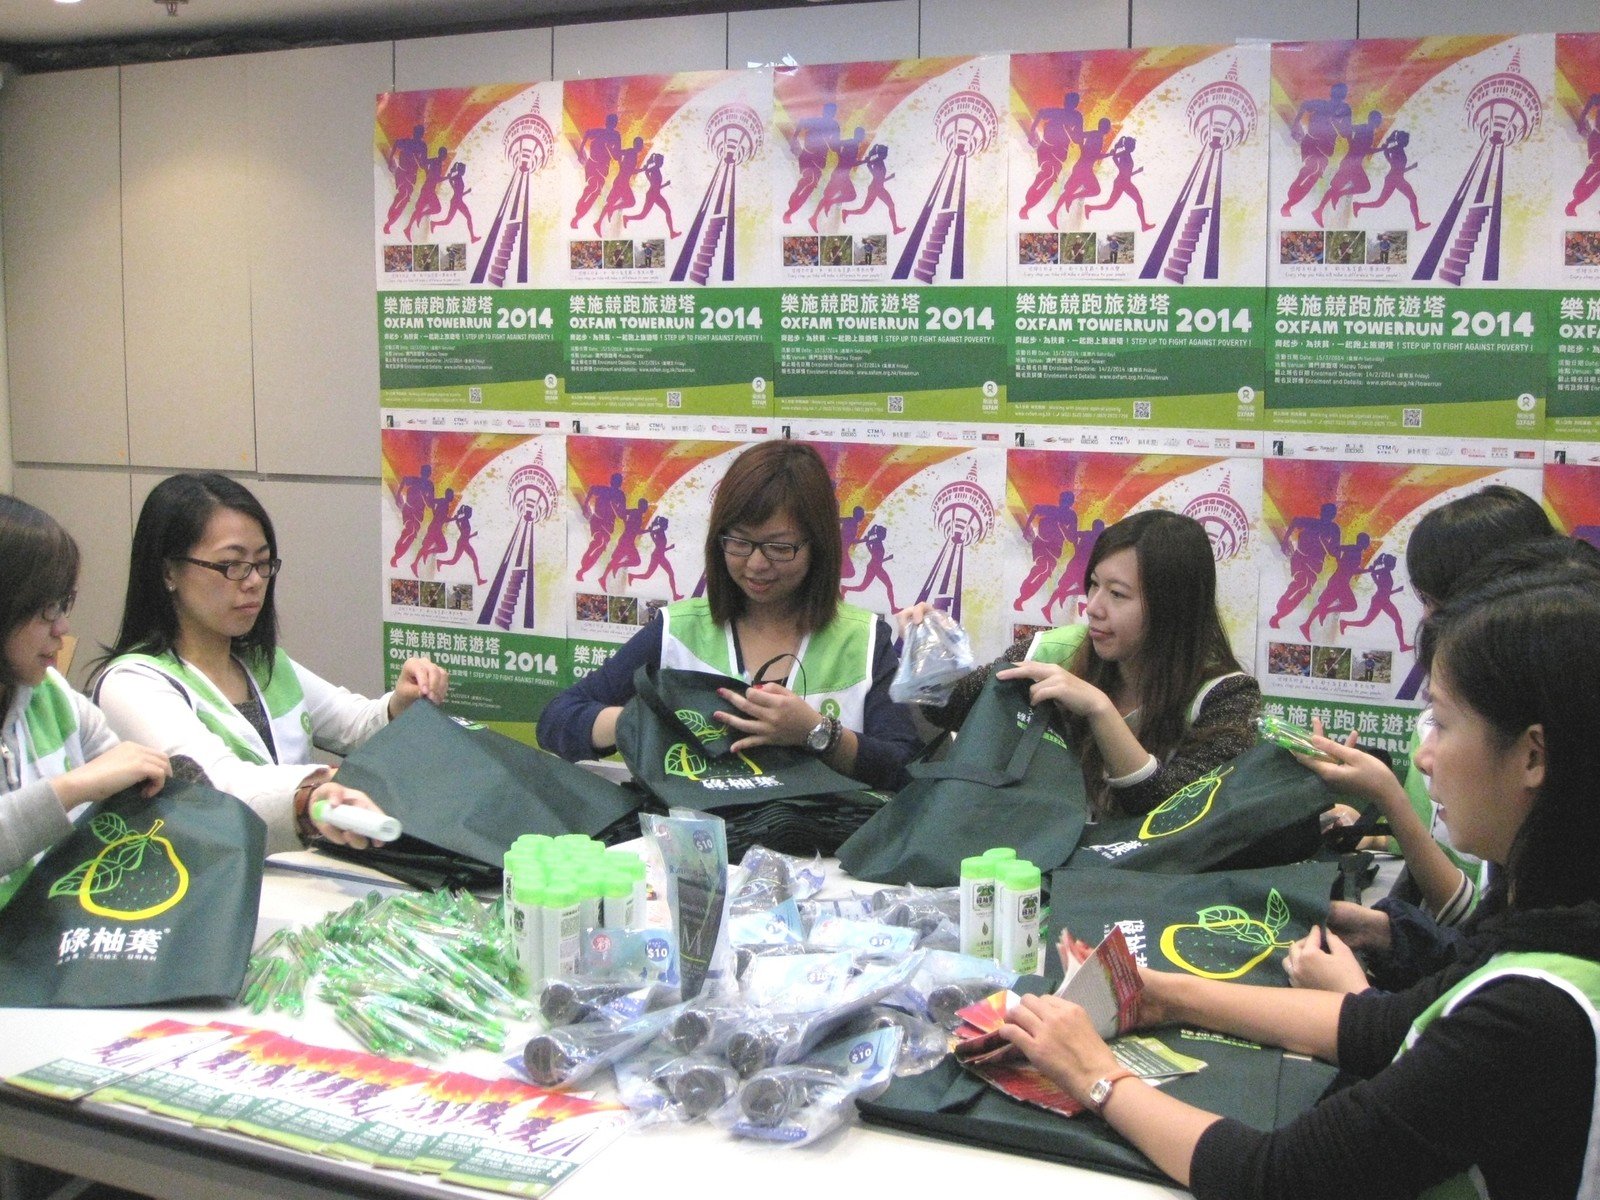 乐施会工作人员正为「乐施竞跑旅游塔2014」活动准备参加者的礼品包。